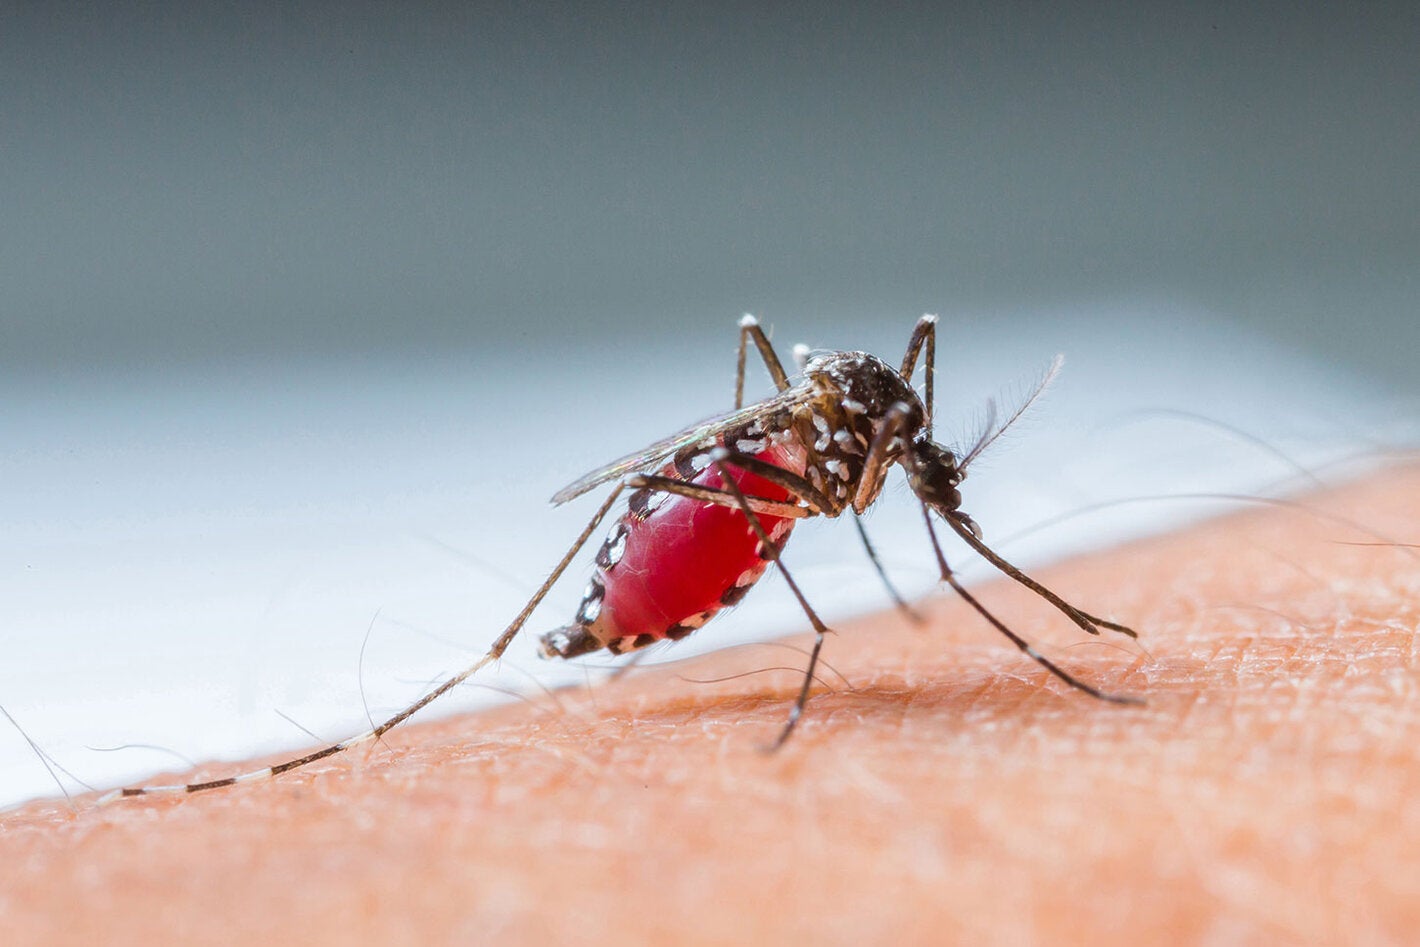 17mo Curso Internacional de Dengue y otros Arbovirus en el contexto de la pandemia de COVID-19